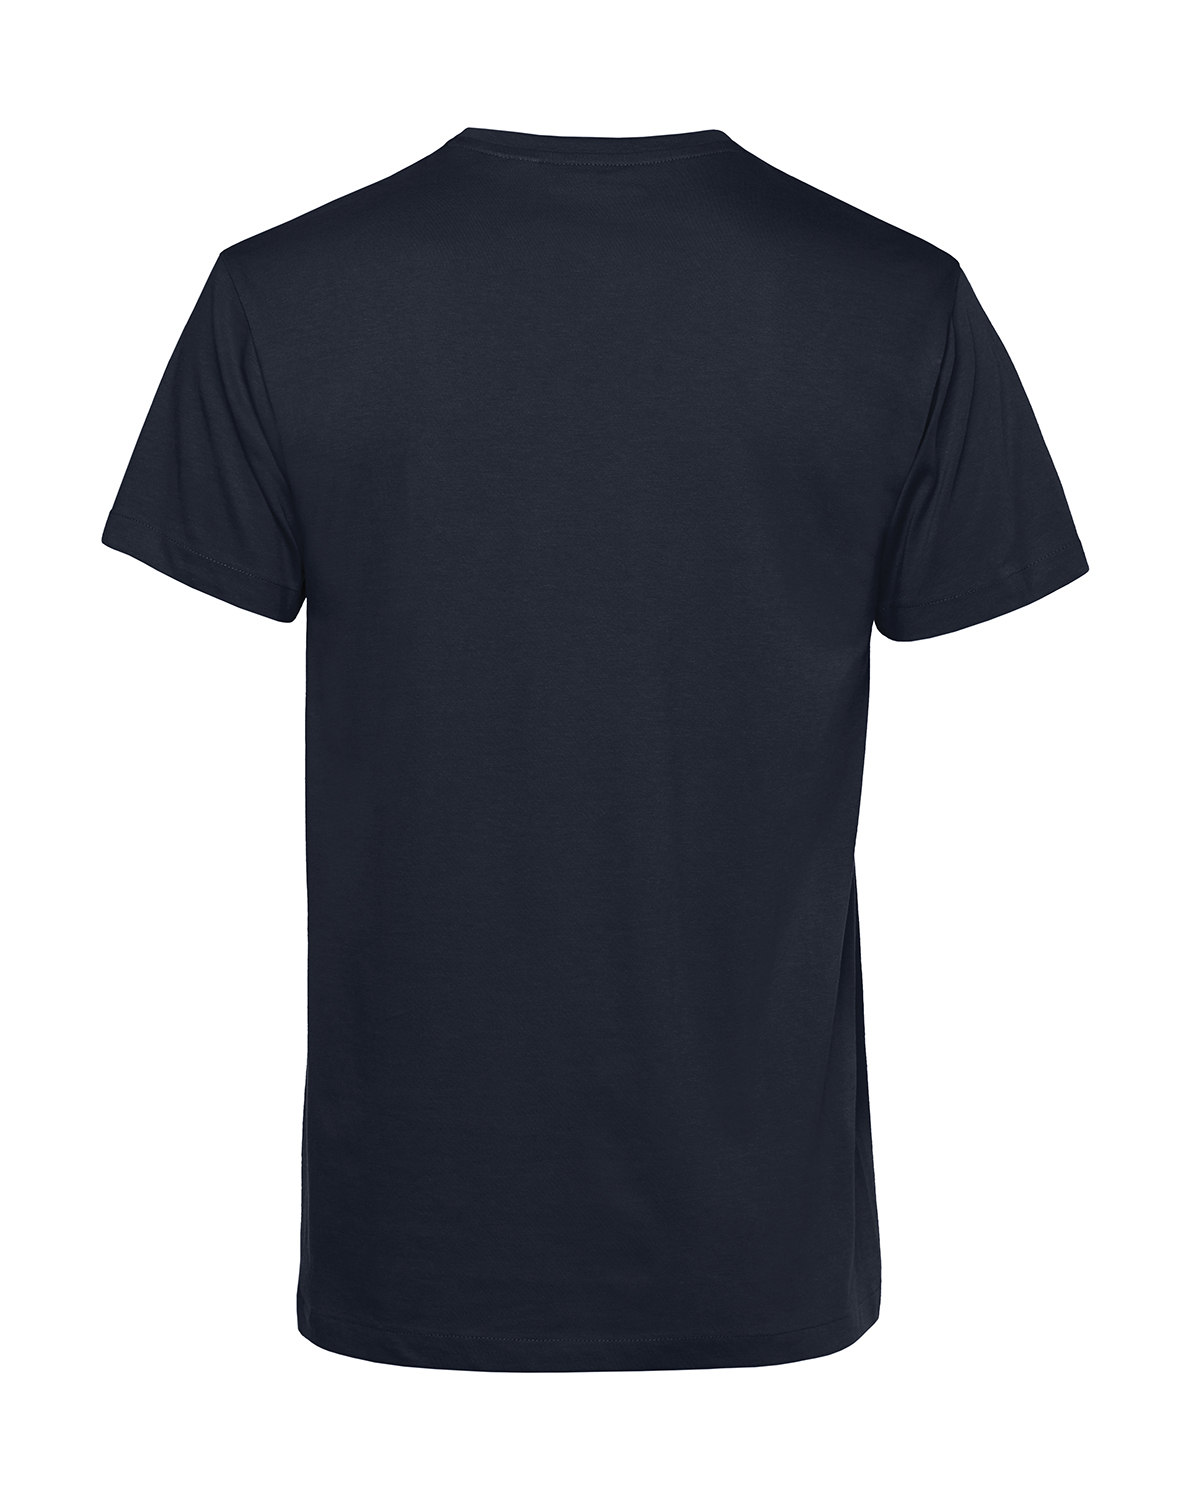 Nachhaltiges T-Shirt Herren 2Takt - Wenn Du keine besitzt Star